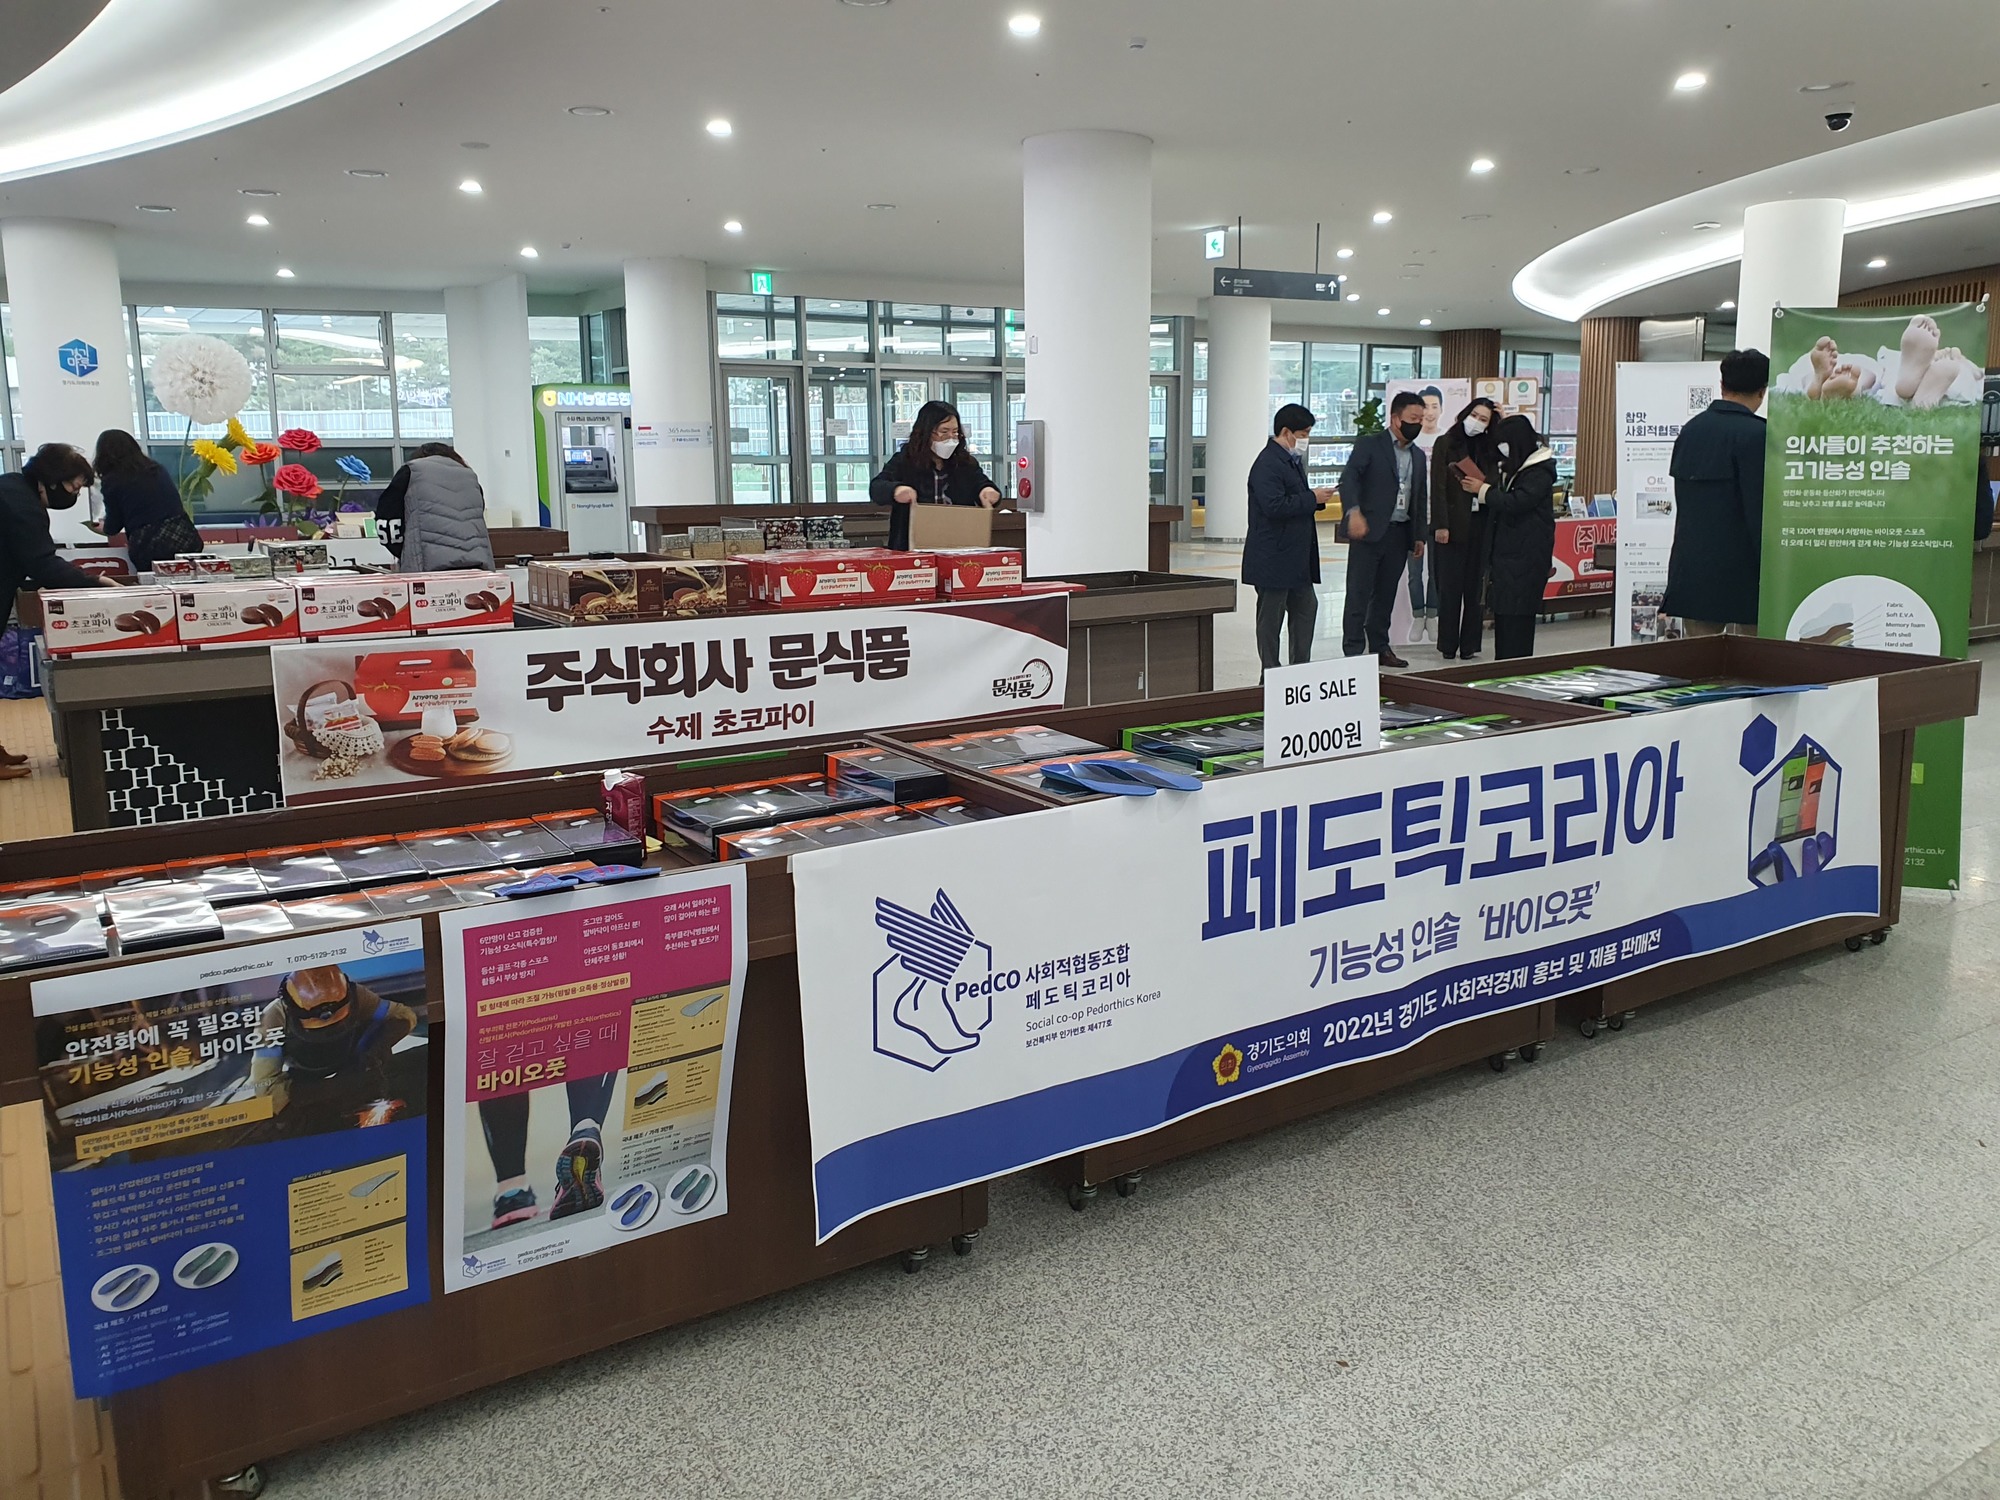 경기도의회 주최 사회적경제 홍보 및 판매전 참가